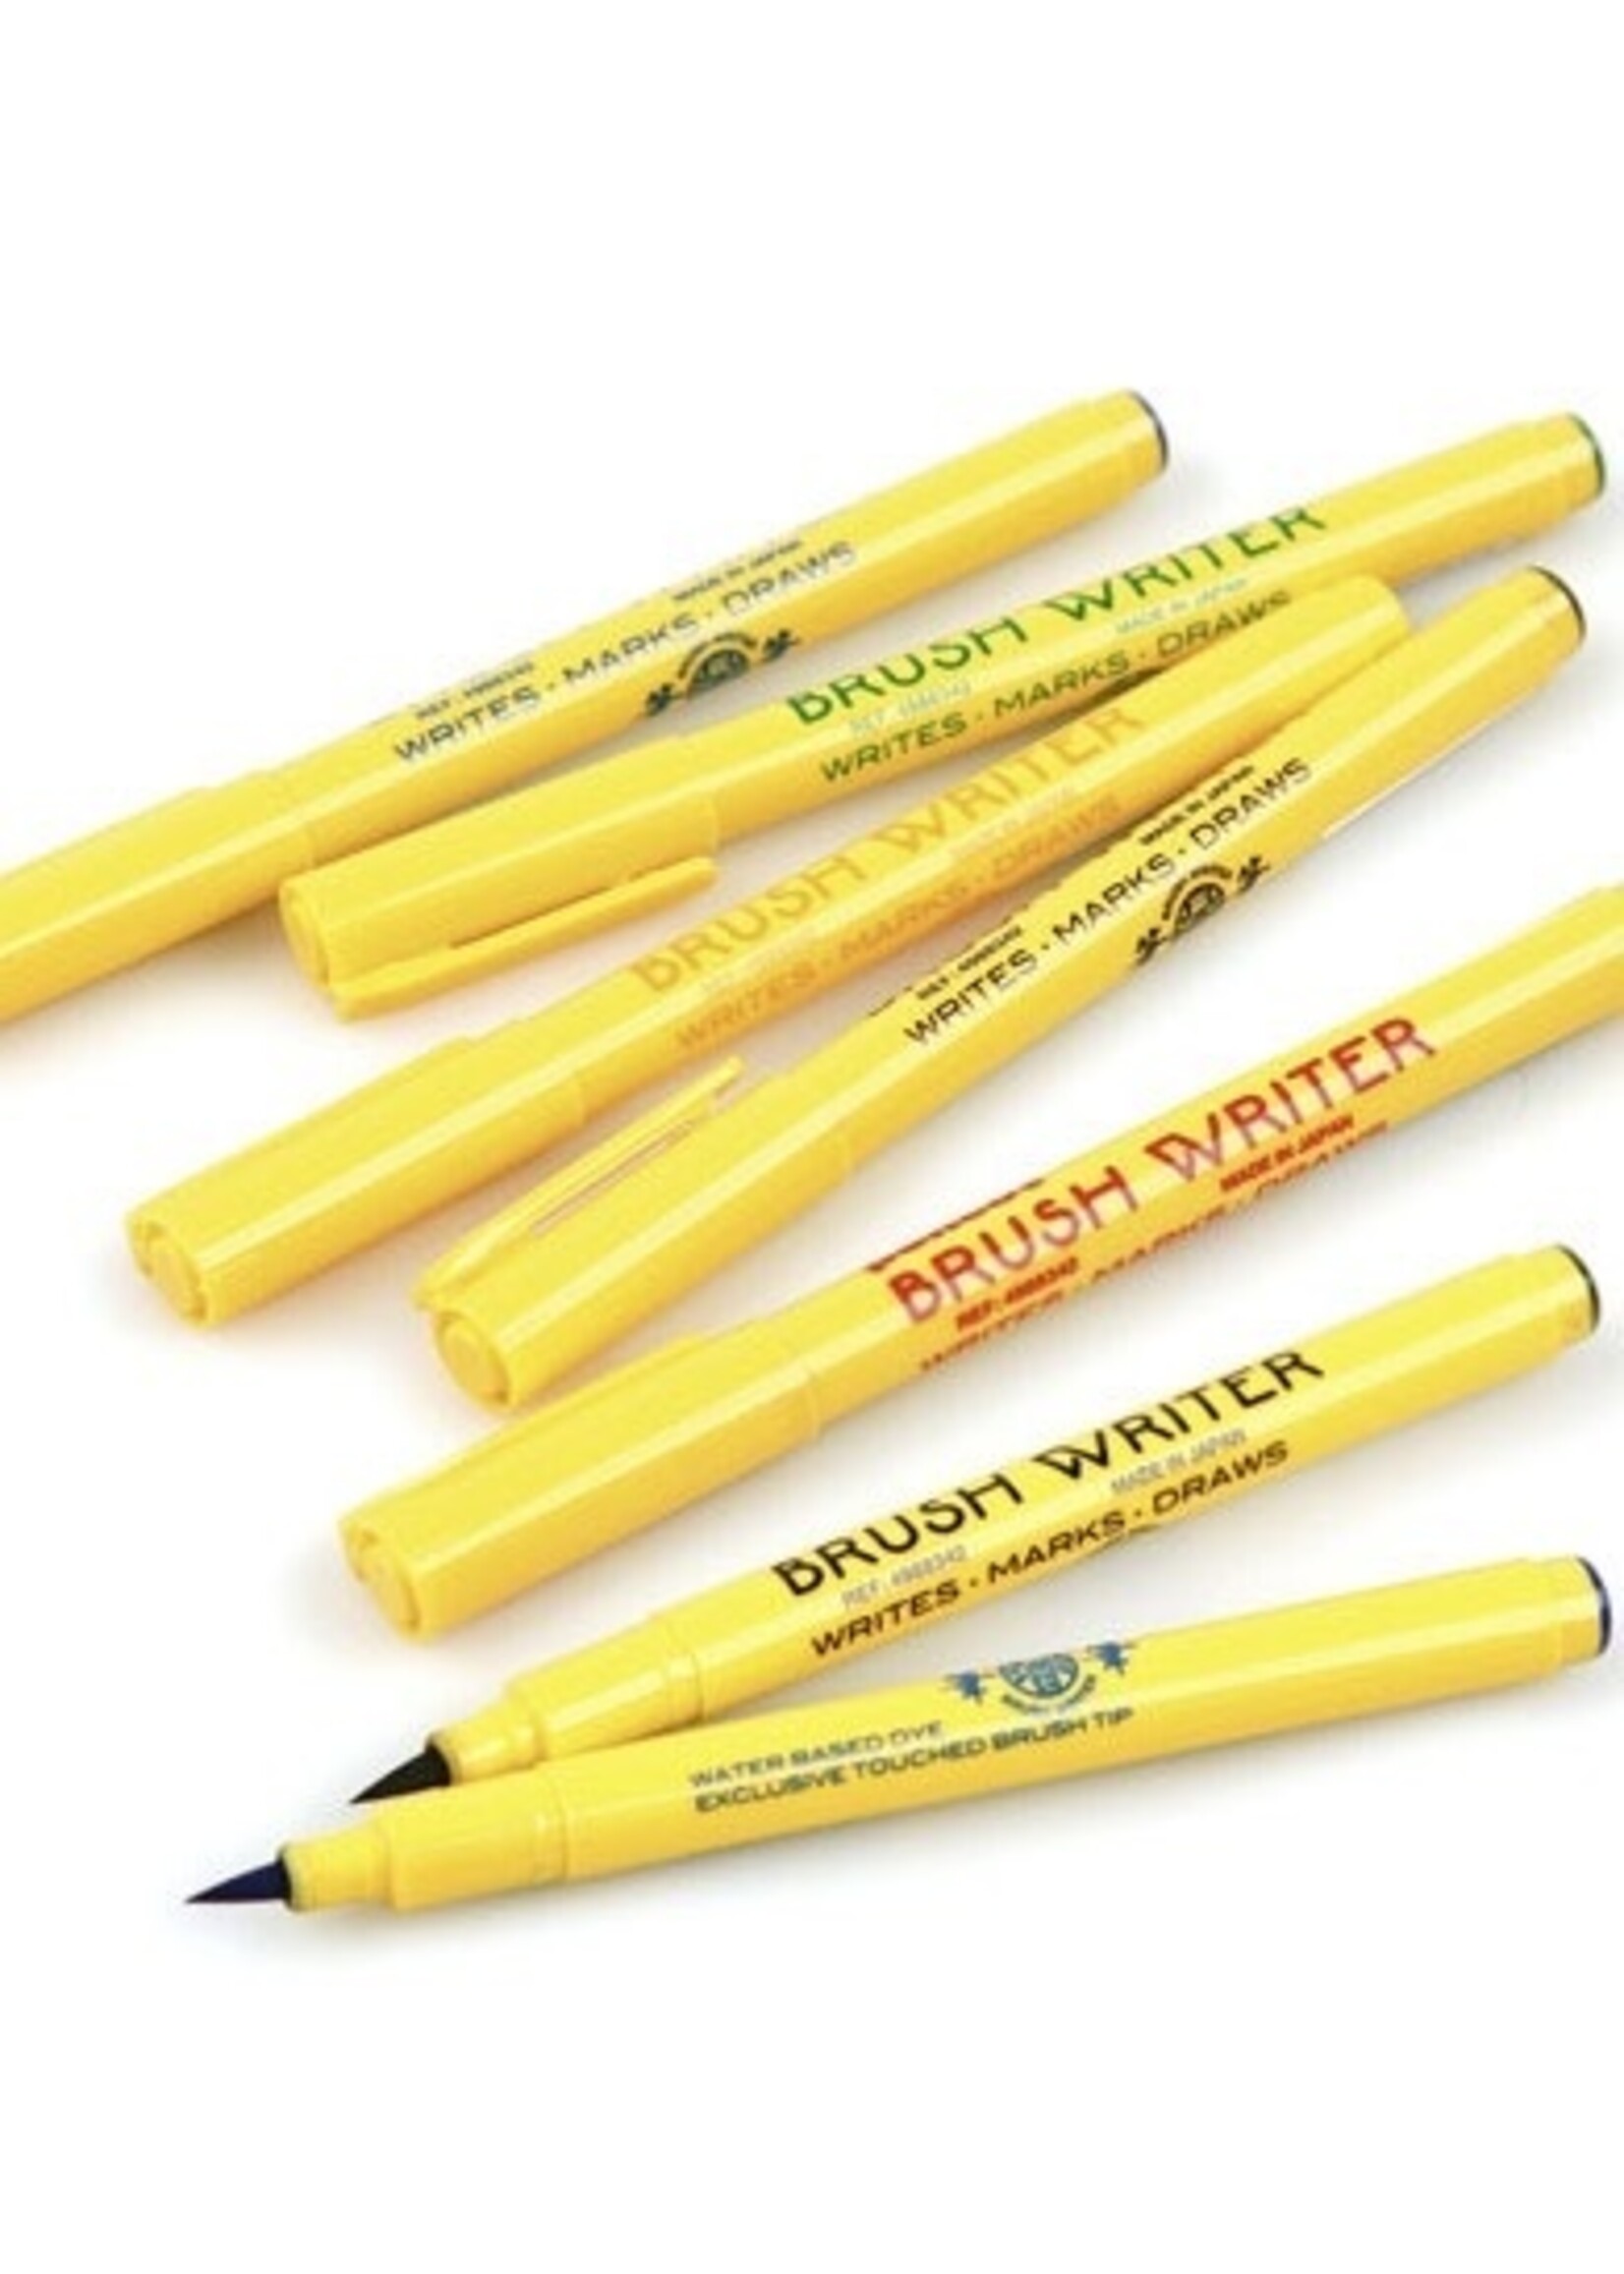 Hightide Pens "Brush Writer" by Penco